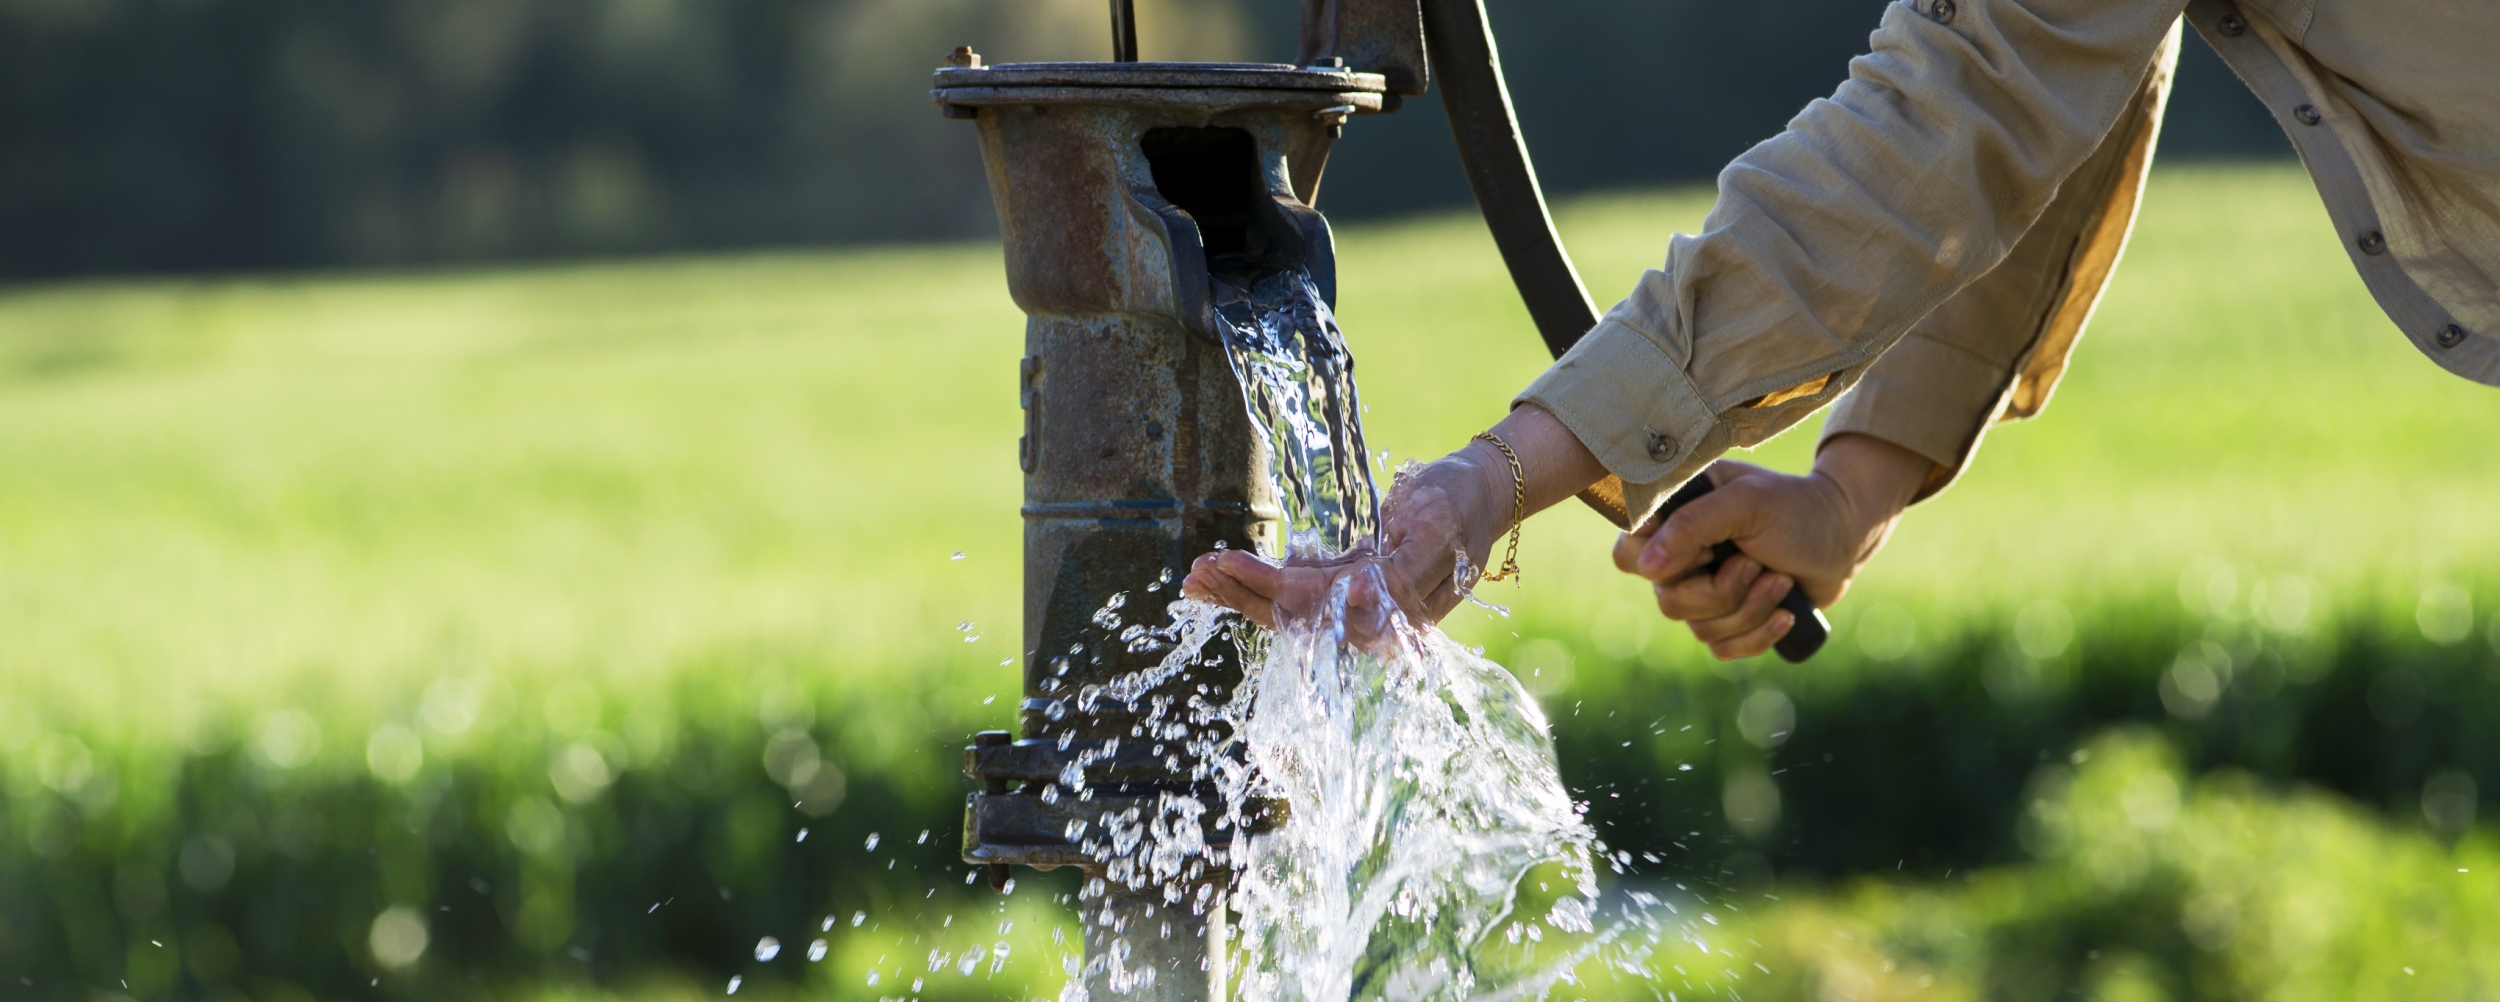 grondwater filteren tot drinkwater